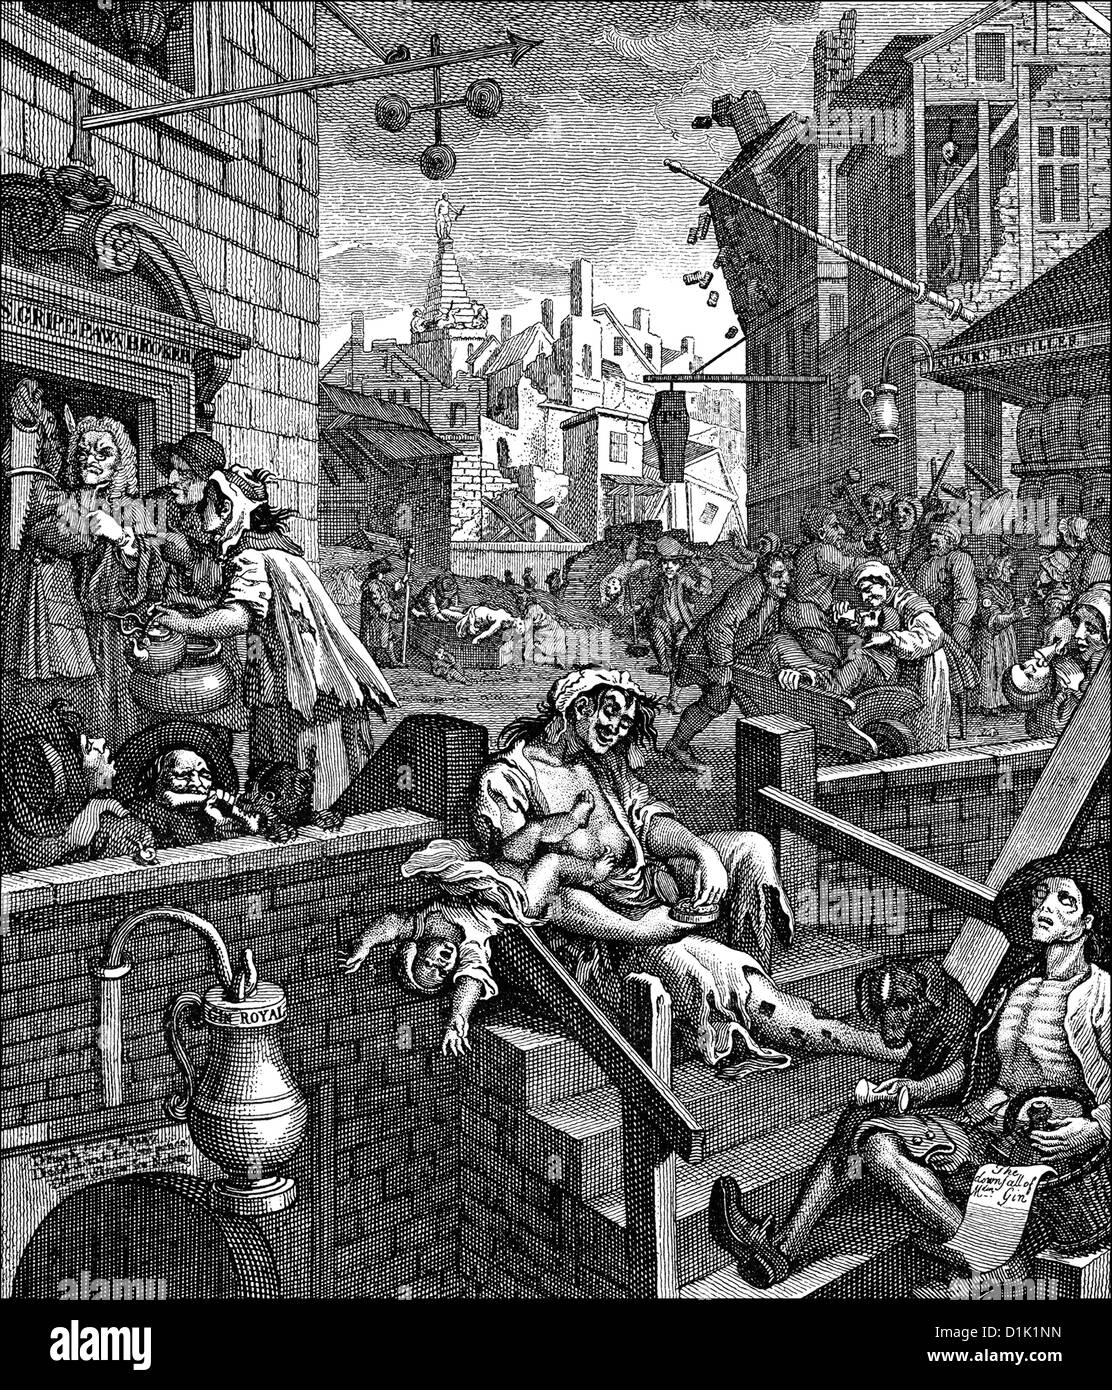 Il Gin Lane o di liquore vicolo, una caricatura, immagine simbolica sull alcolismo nel XVIII secolo in Inghilterra, da William Hogarth, 1697 - Foto Stock